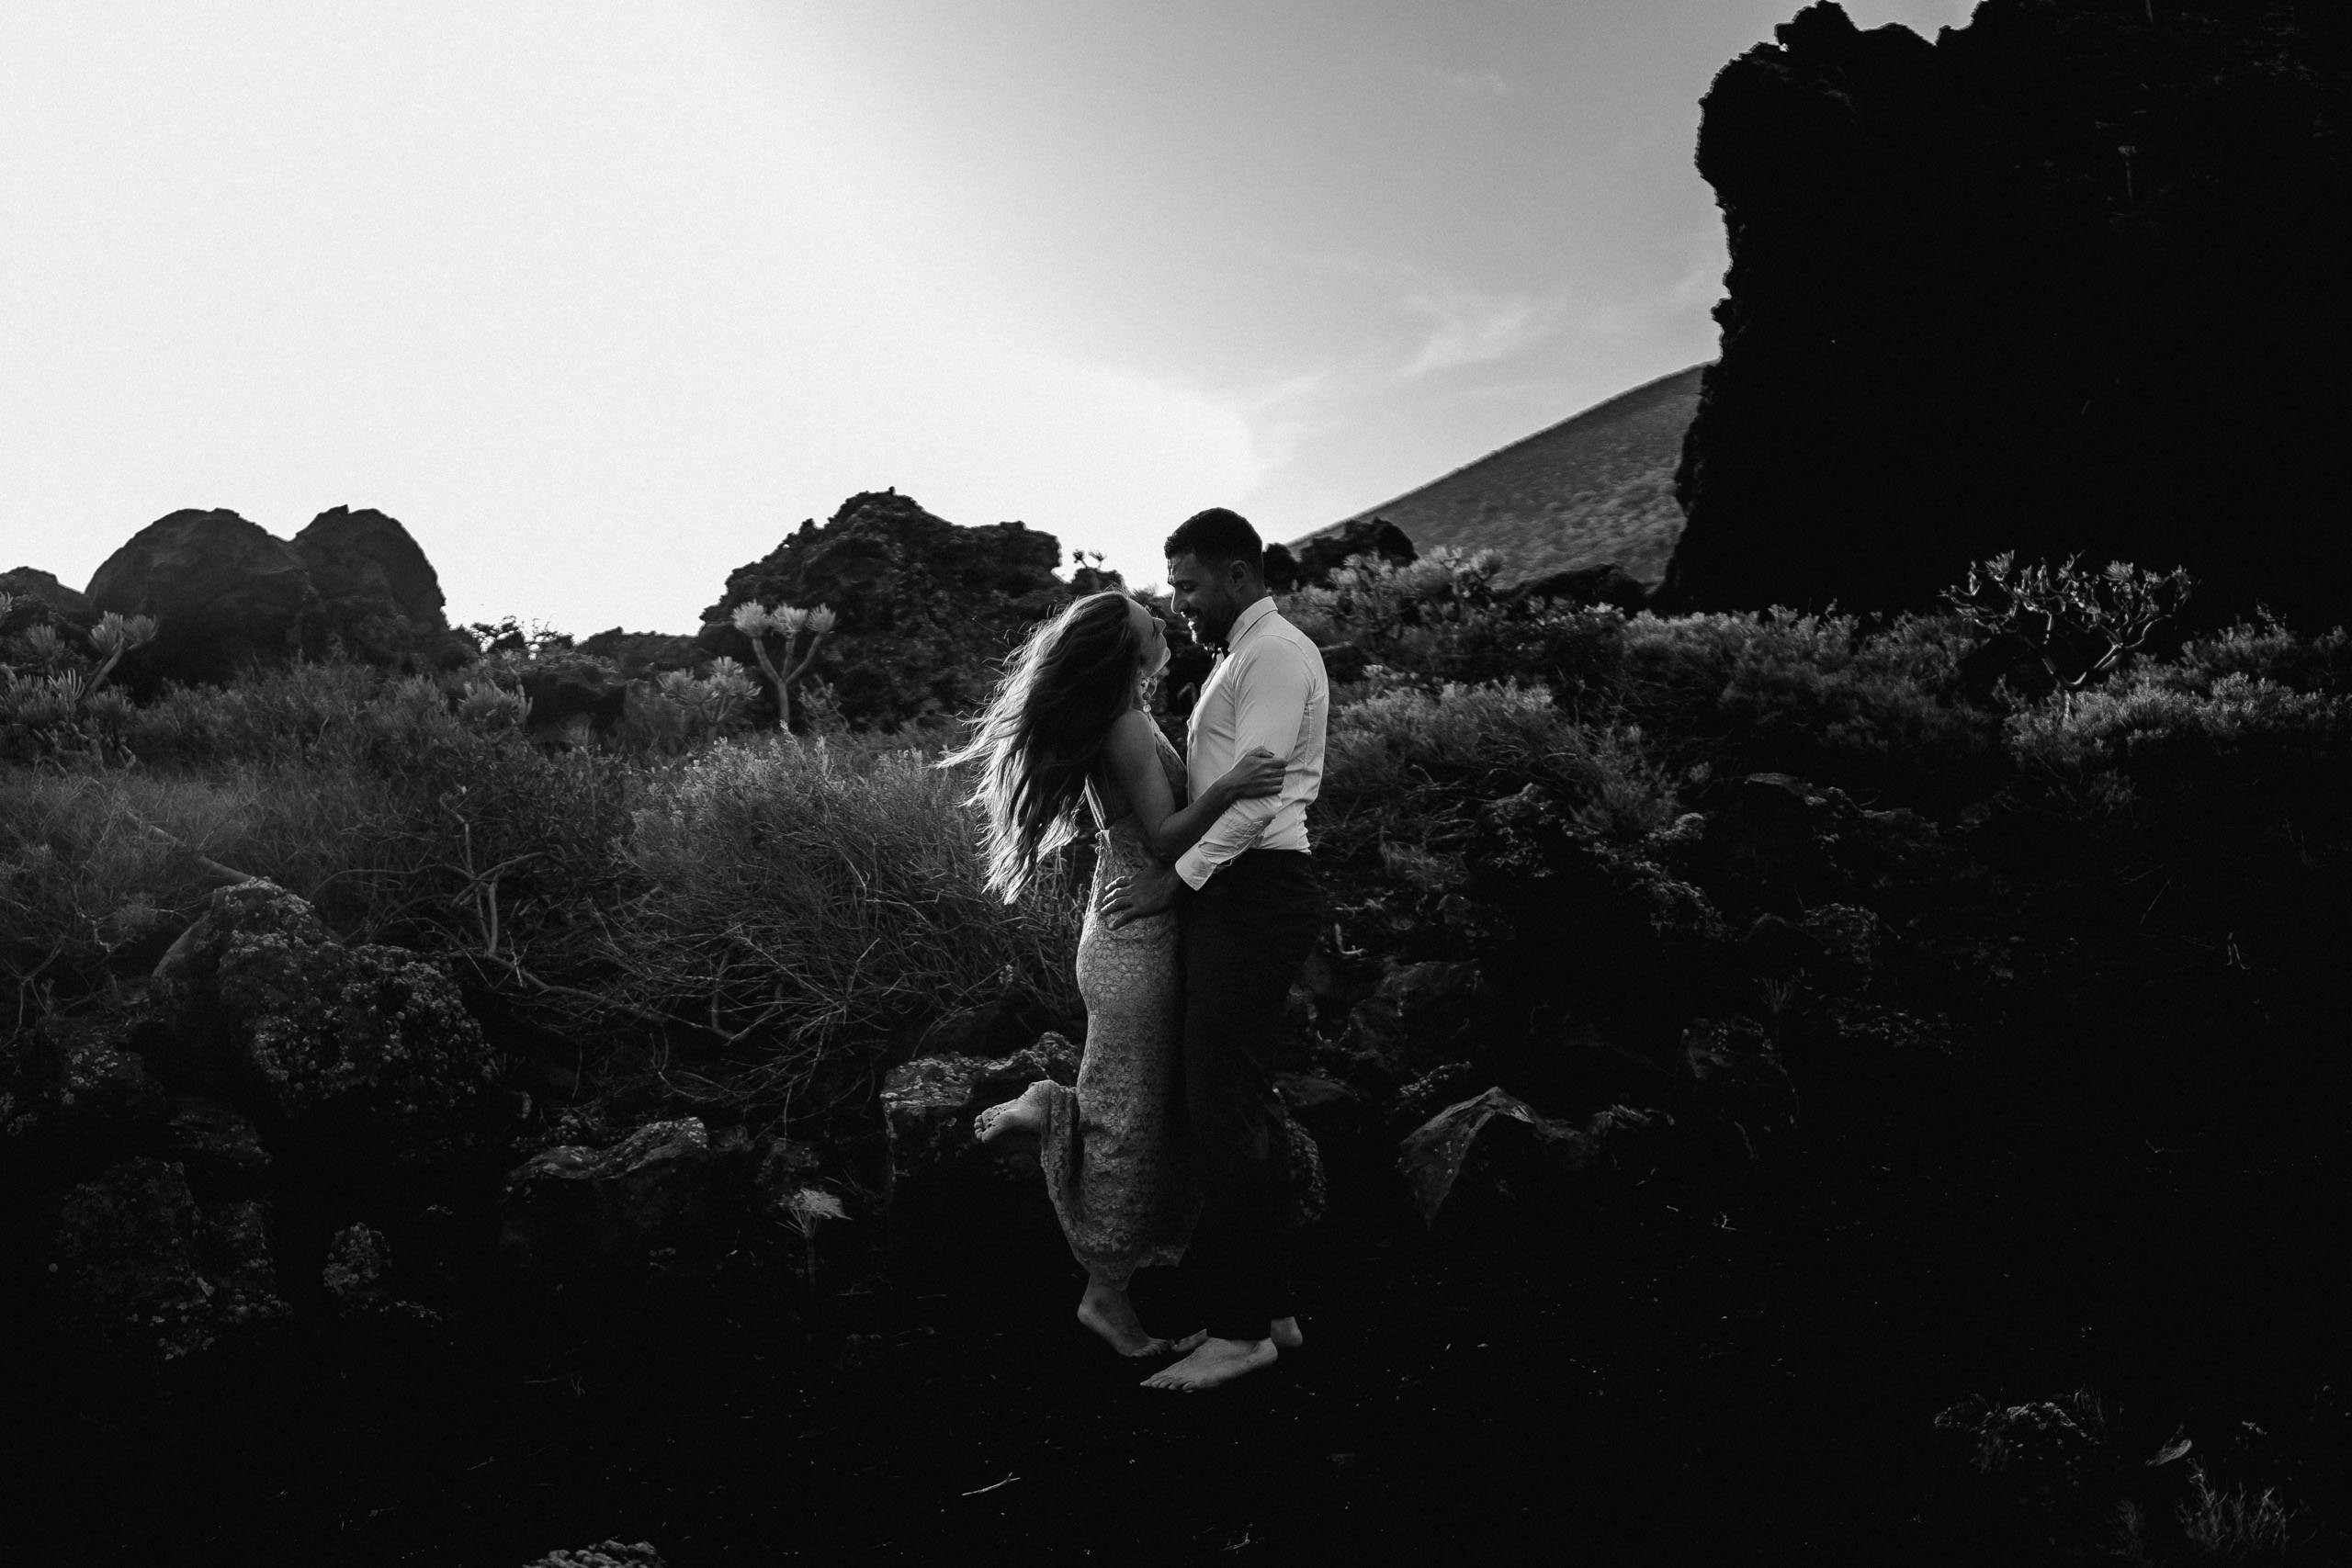 Aida + Tim | Hochzeitsfotografen am Bodensee Elopement - La Palma, Spanien  - Hochzeitsfotografie von Aida und Tim